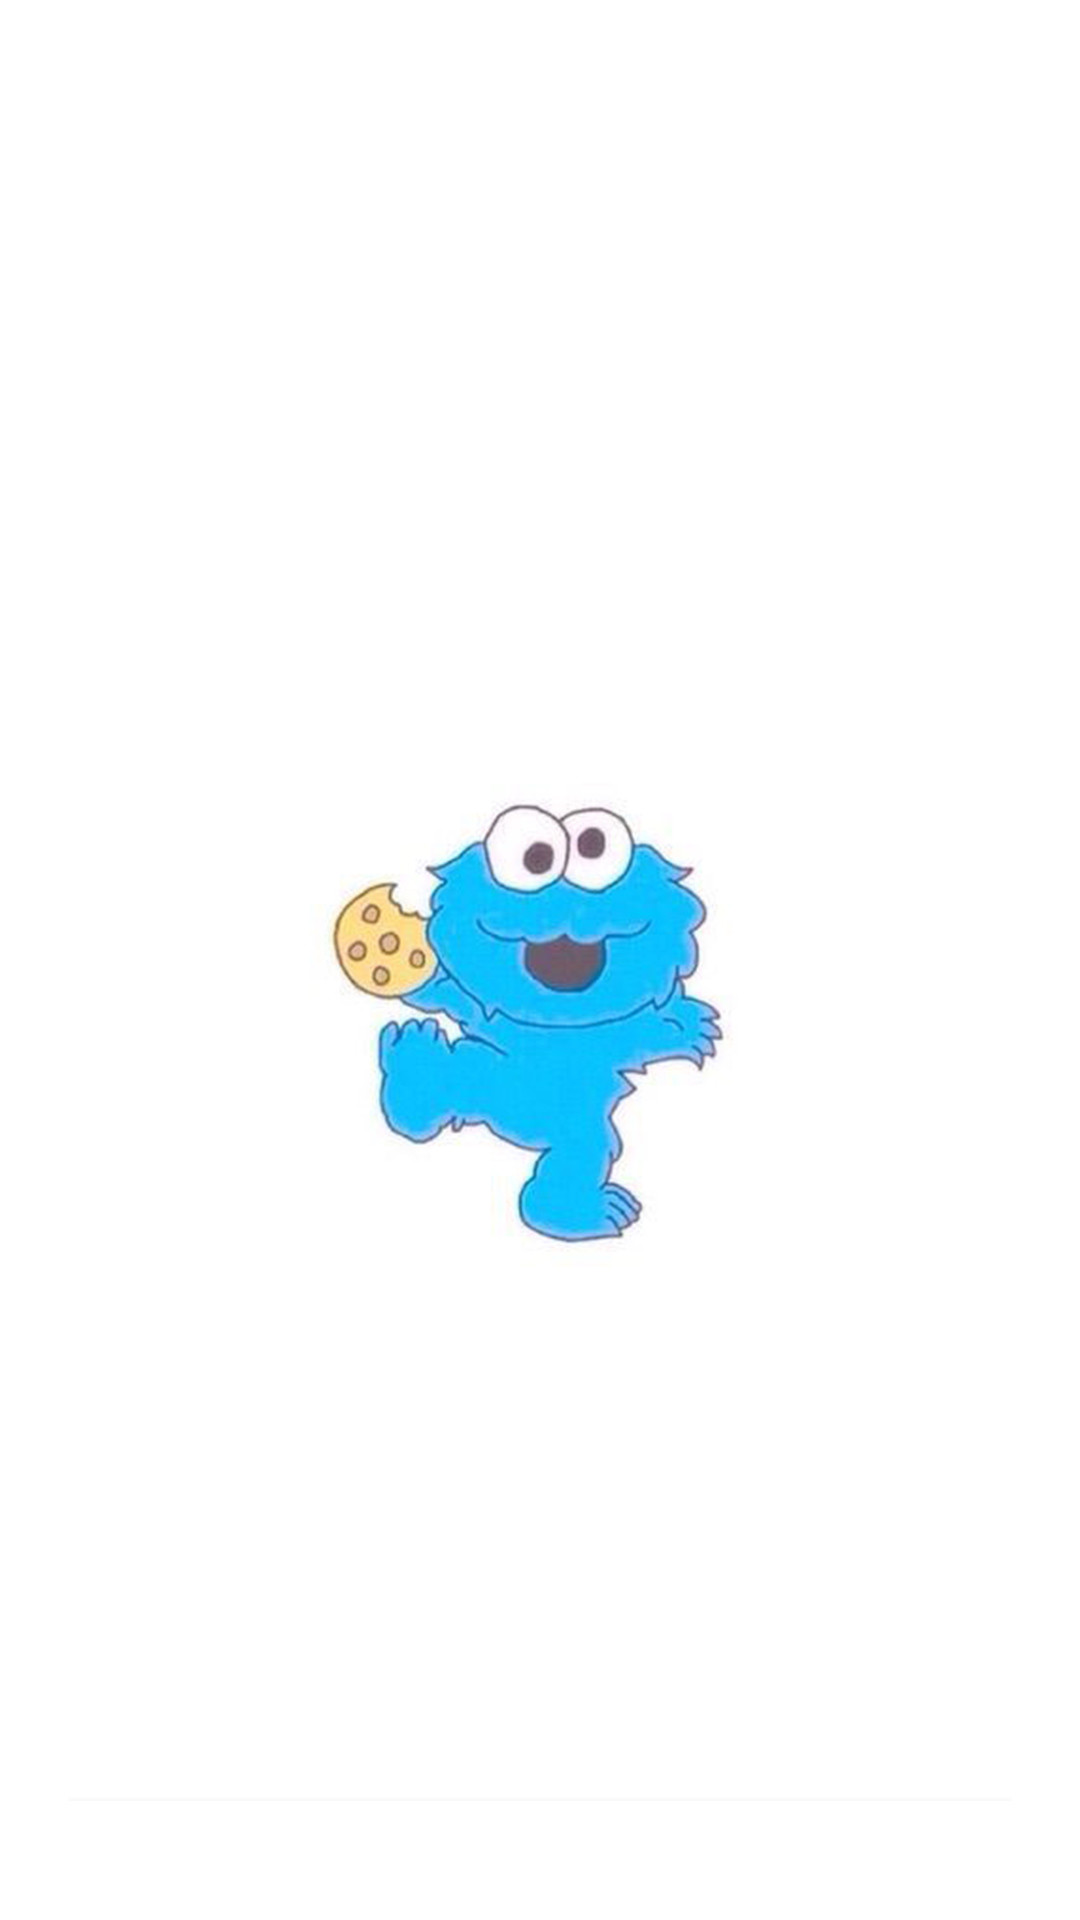 cookie monster fond d'écran iphone,turquoise,bleu,turquoise,aqua